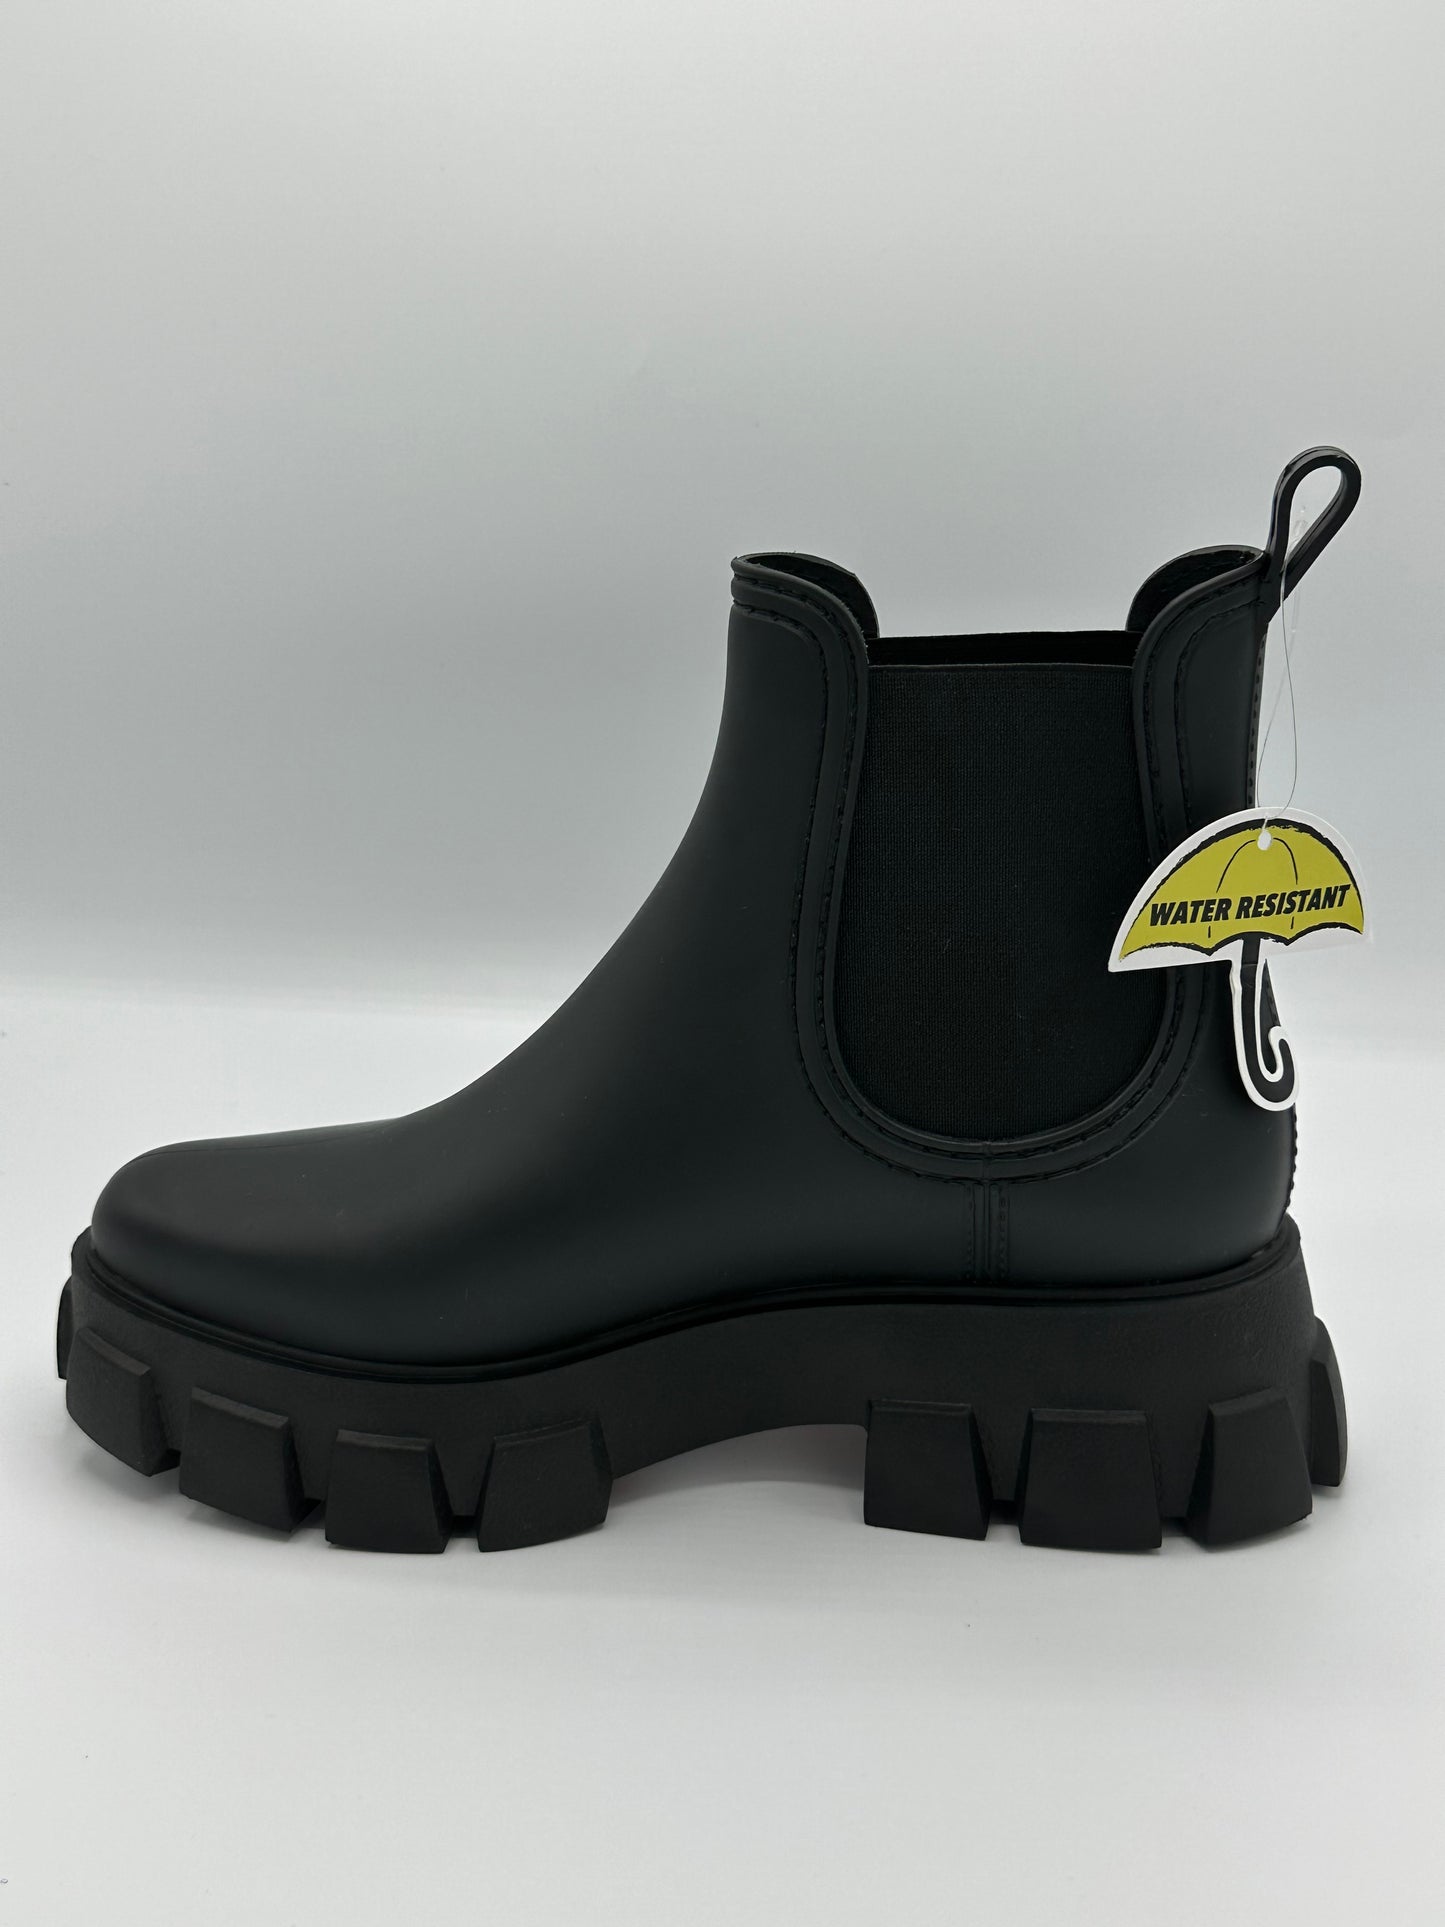 Jeffrey Campbell Women's Raindrop Chelsea Boot in Black Matte